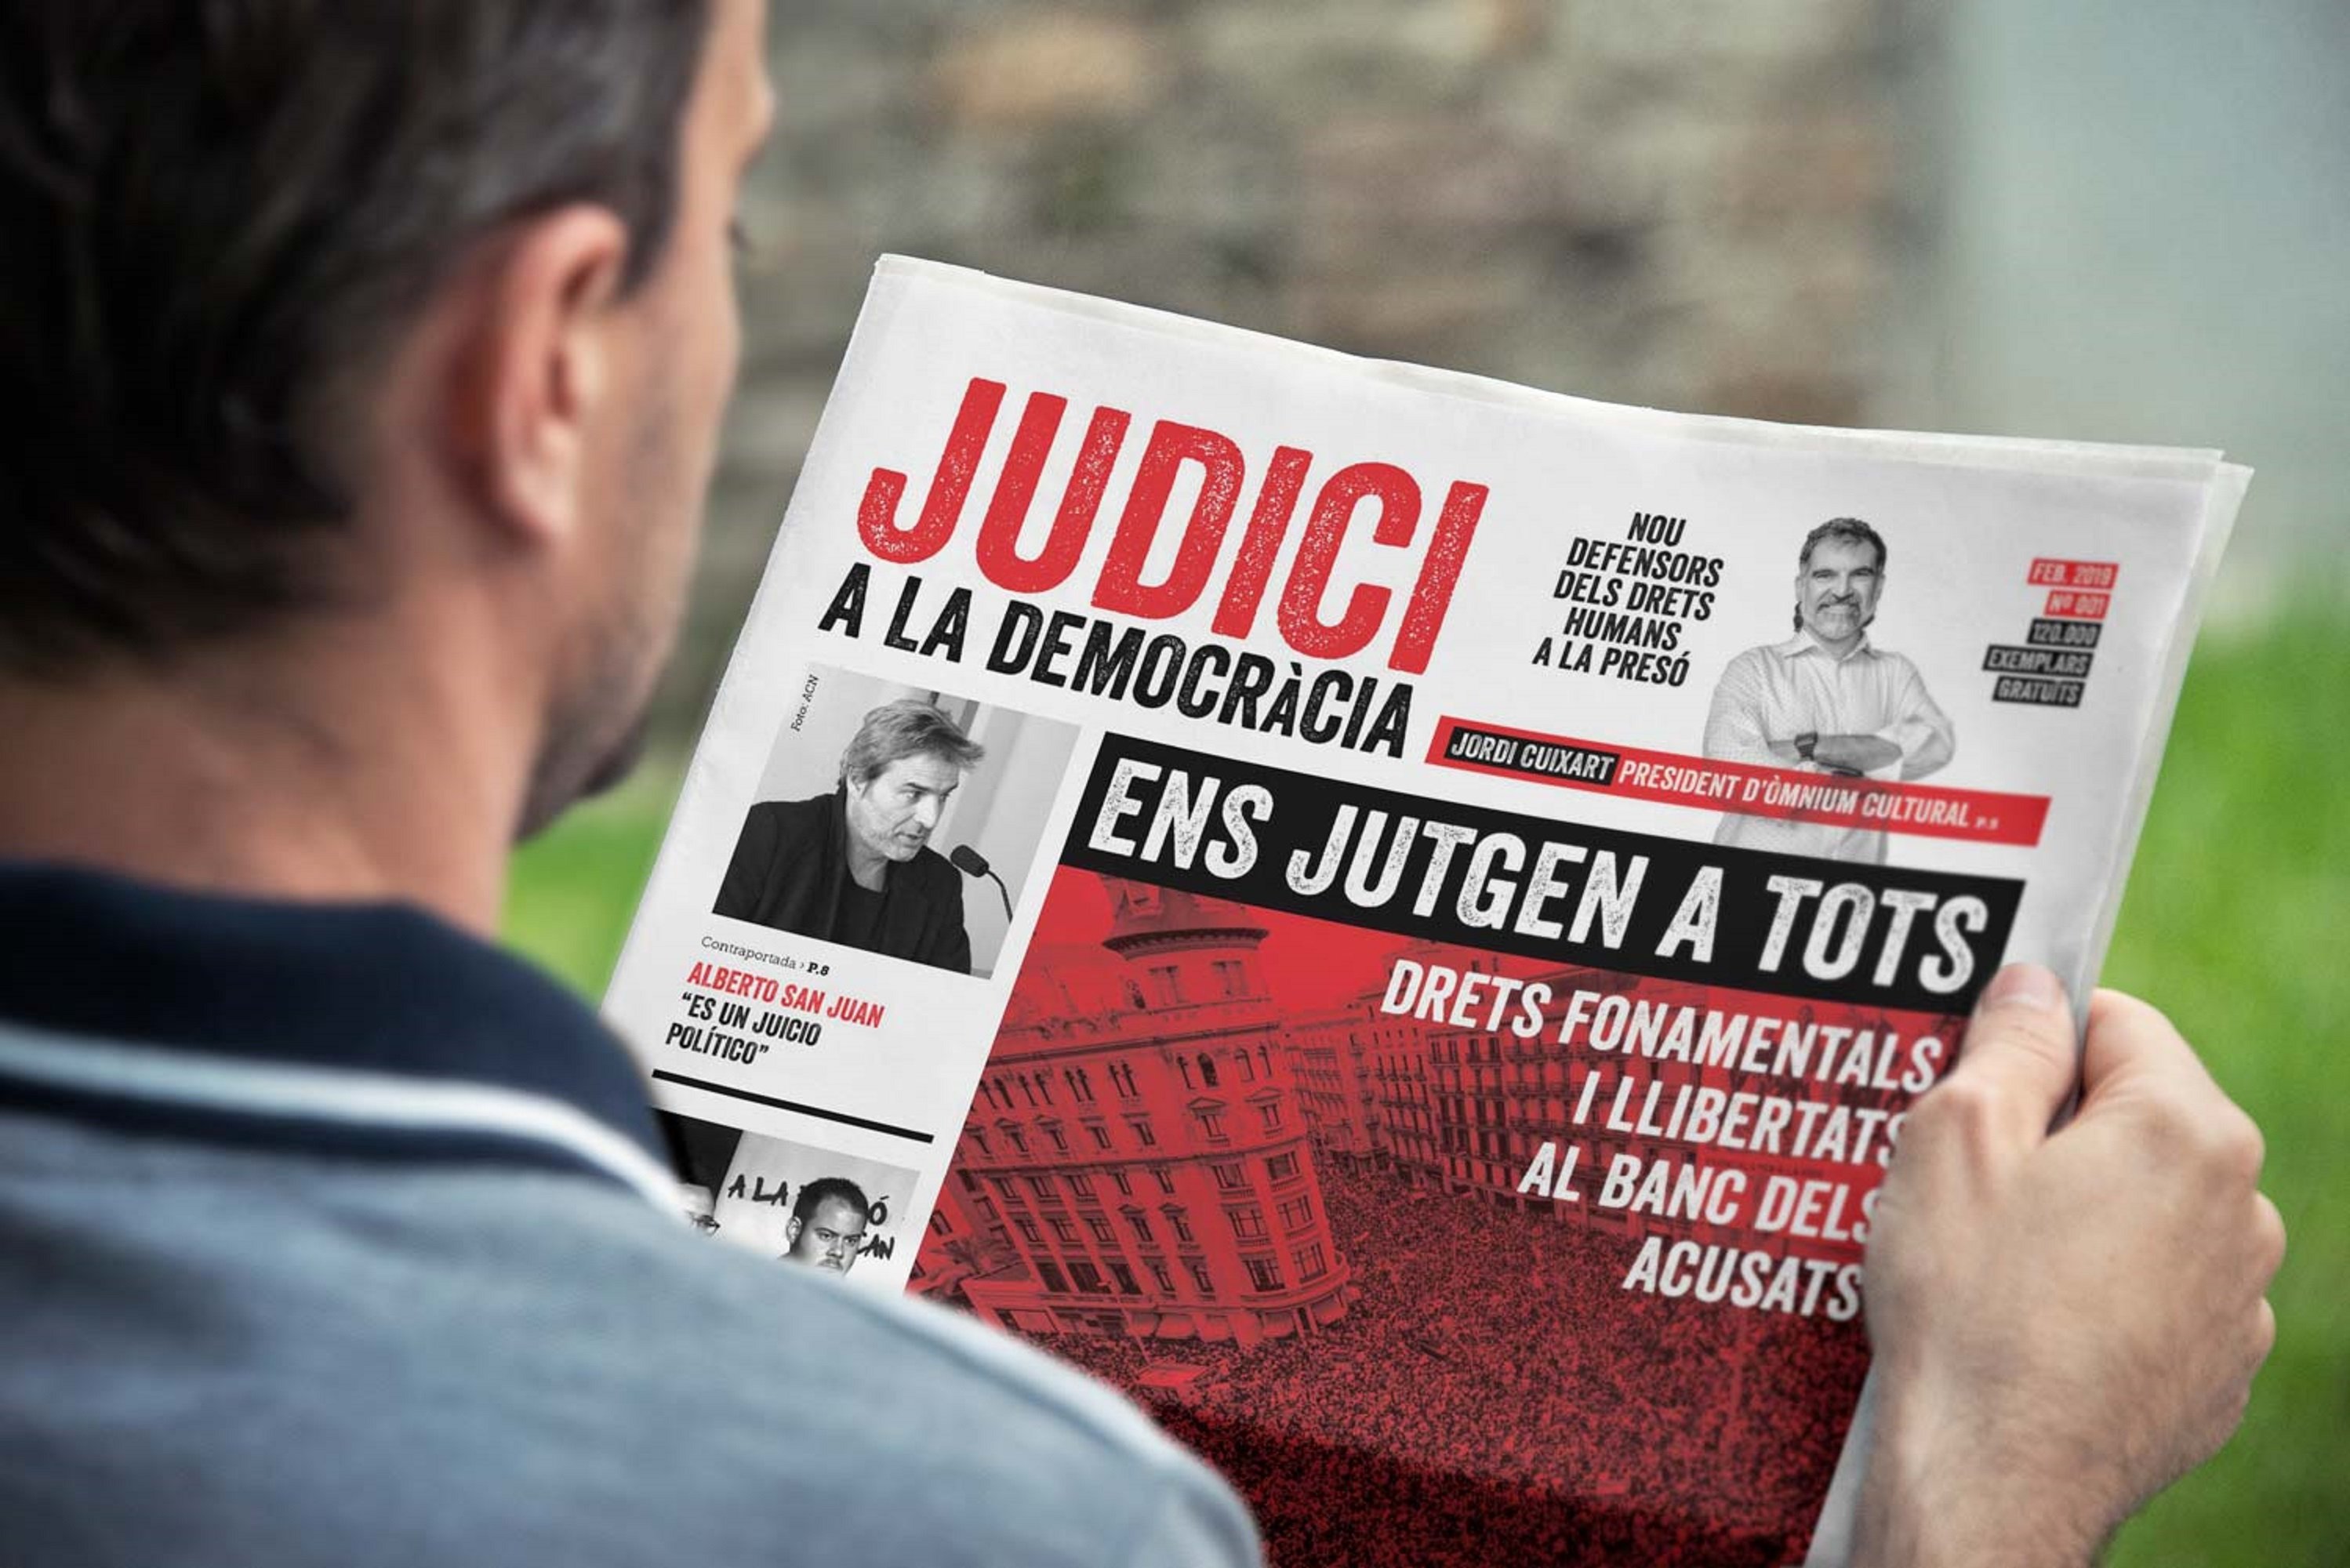 Òmnium denuncia la vulneració de drets amb el diari 'Judici a la Democràcia'